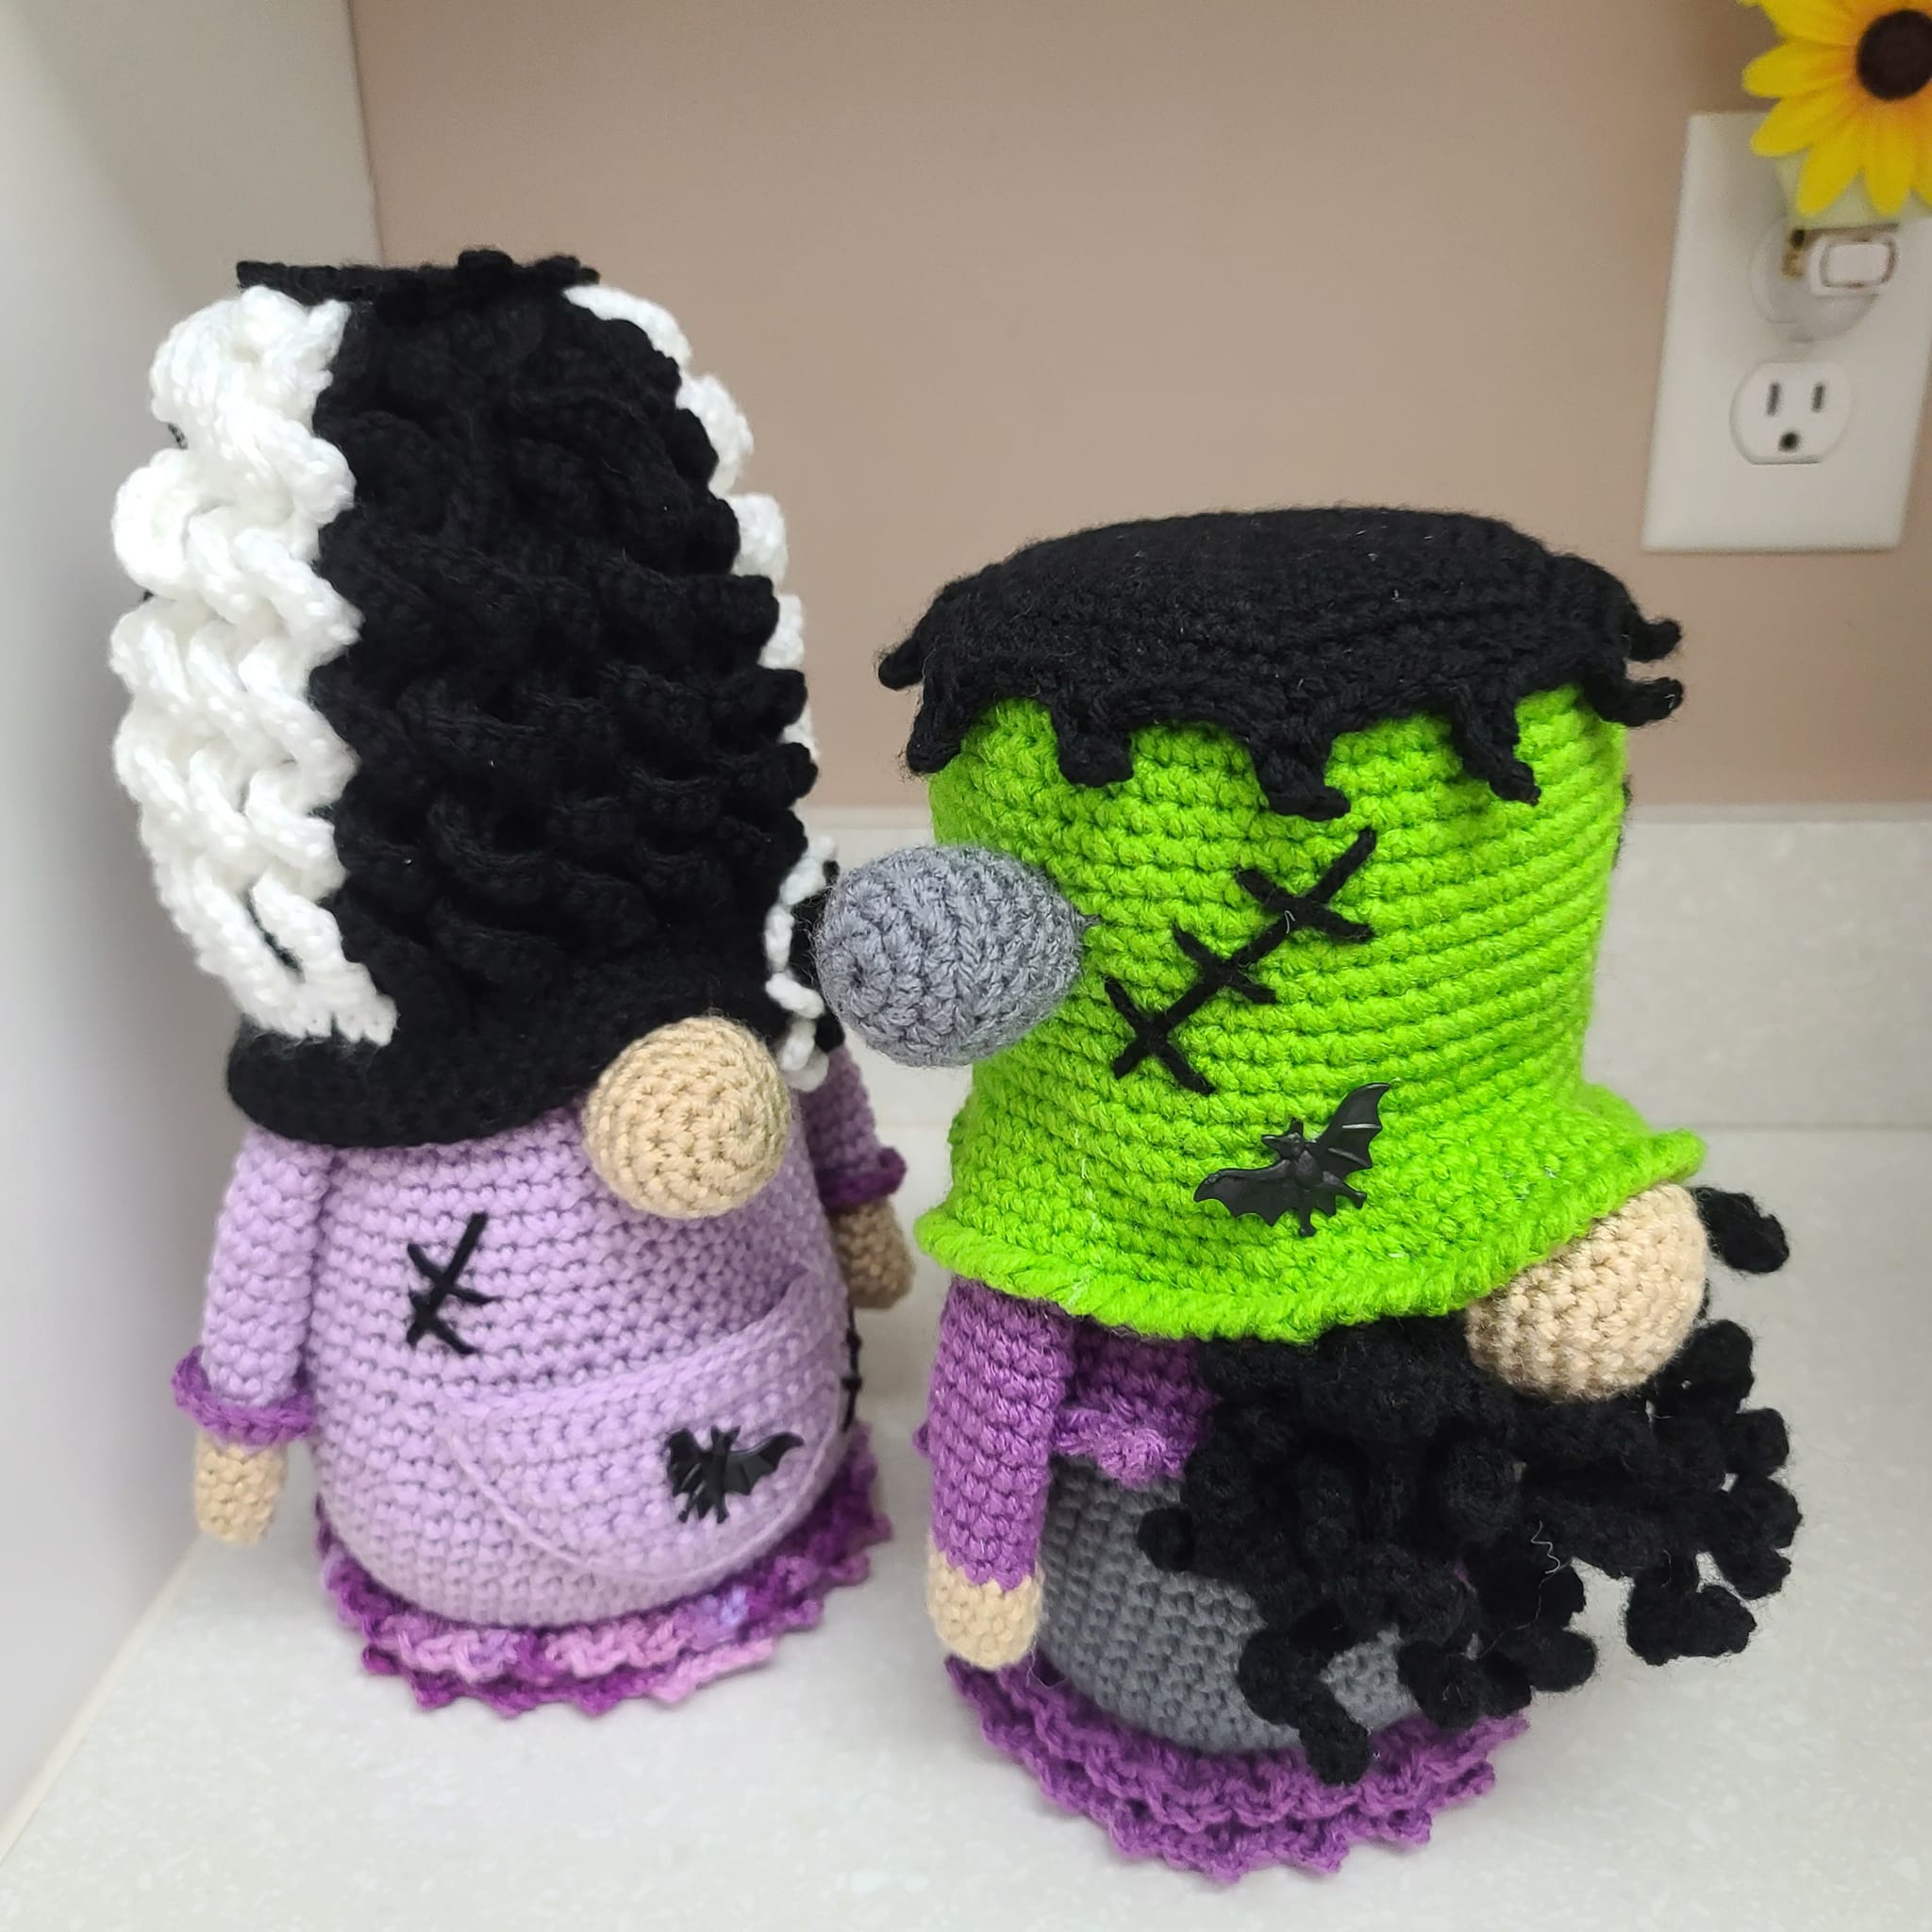 Handmade Crochet Bride of Frankenstein Gnome Figure Halloween